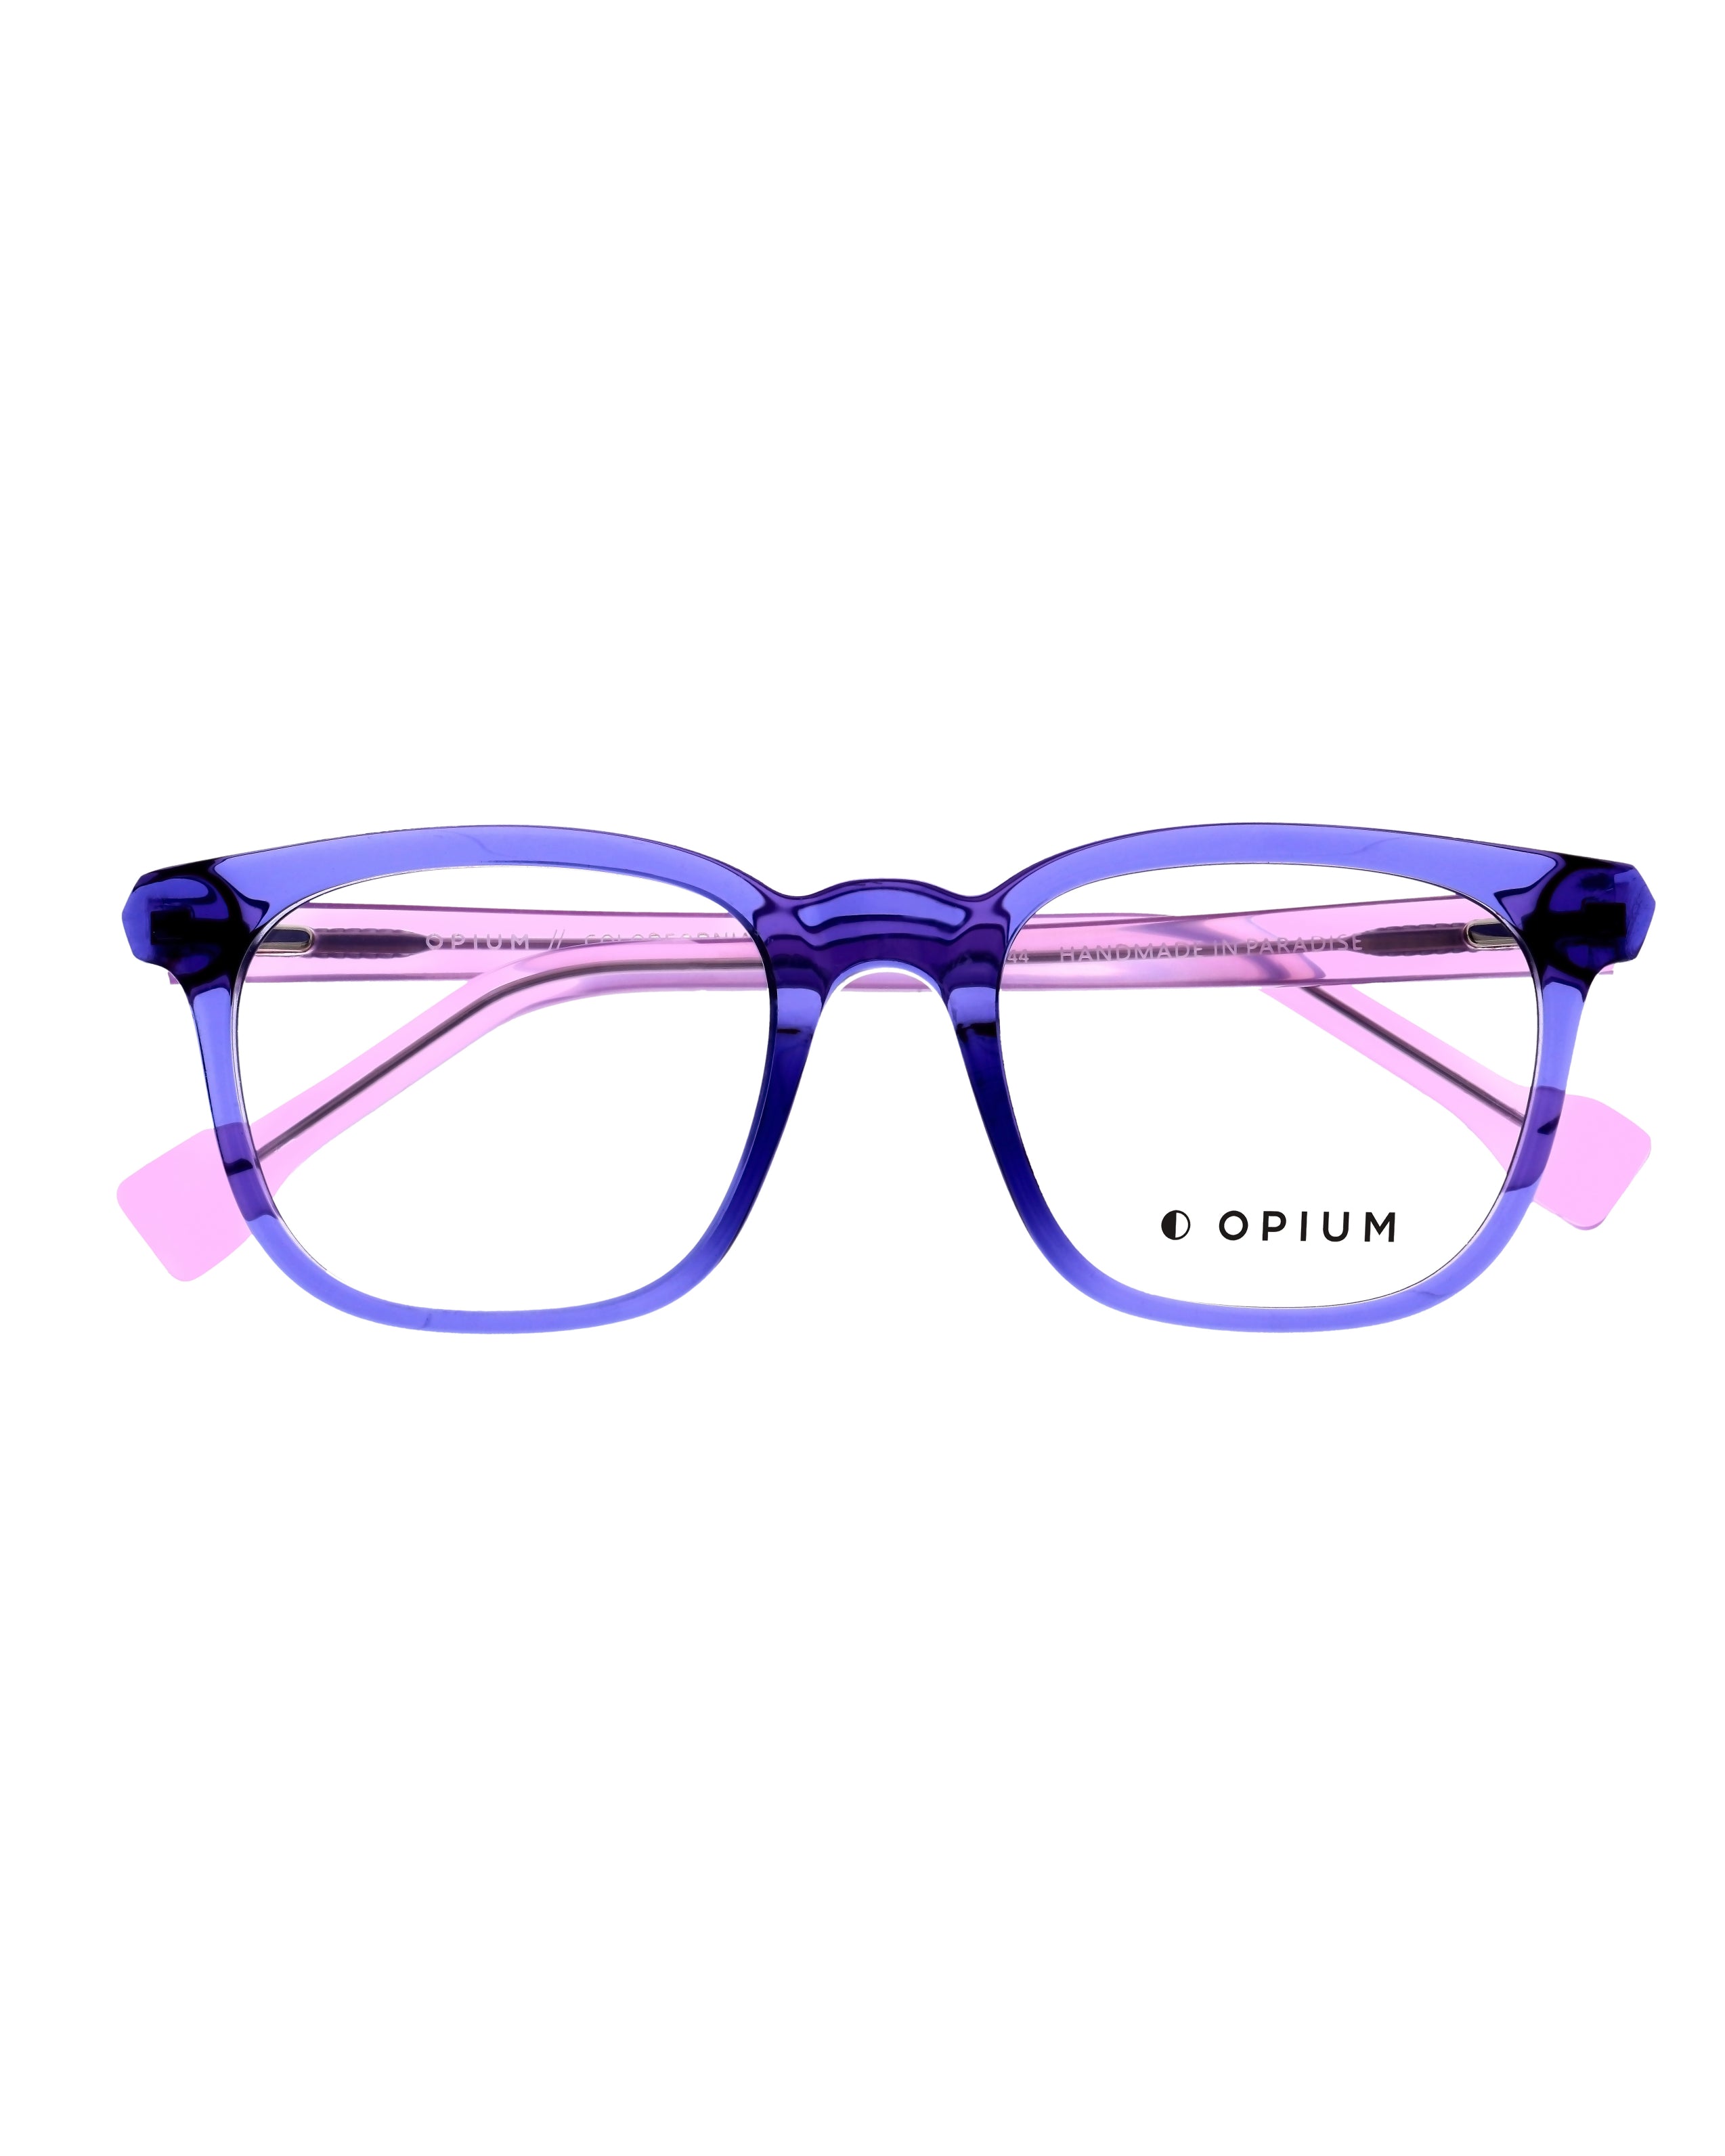 Shop Now,Xenon violet - OPIUM